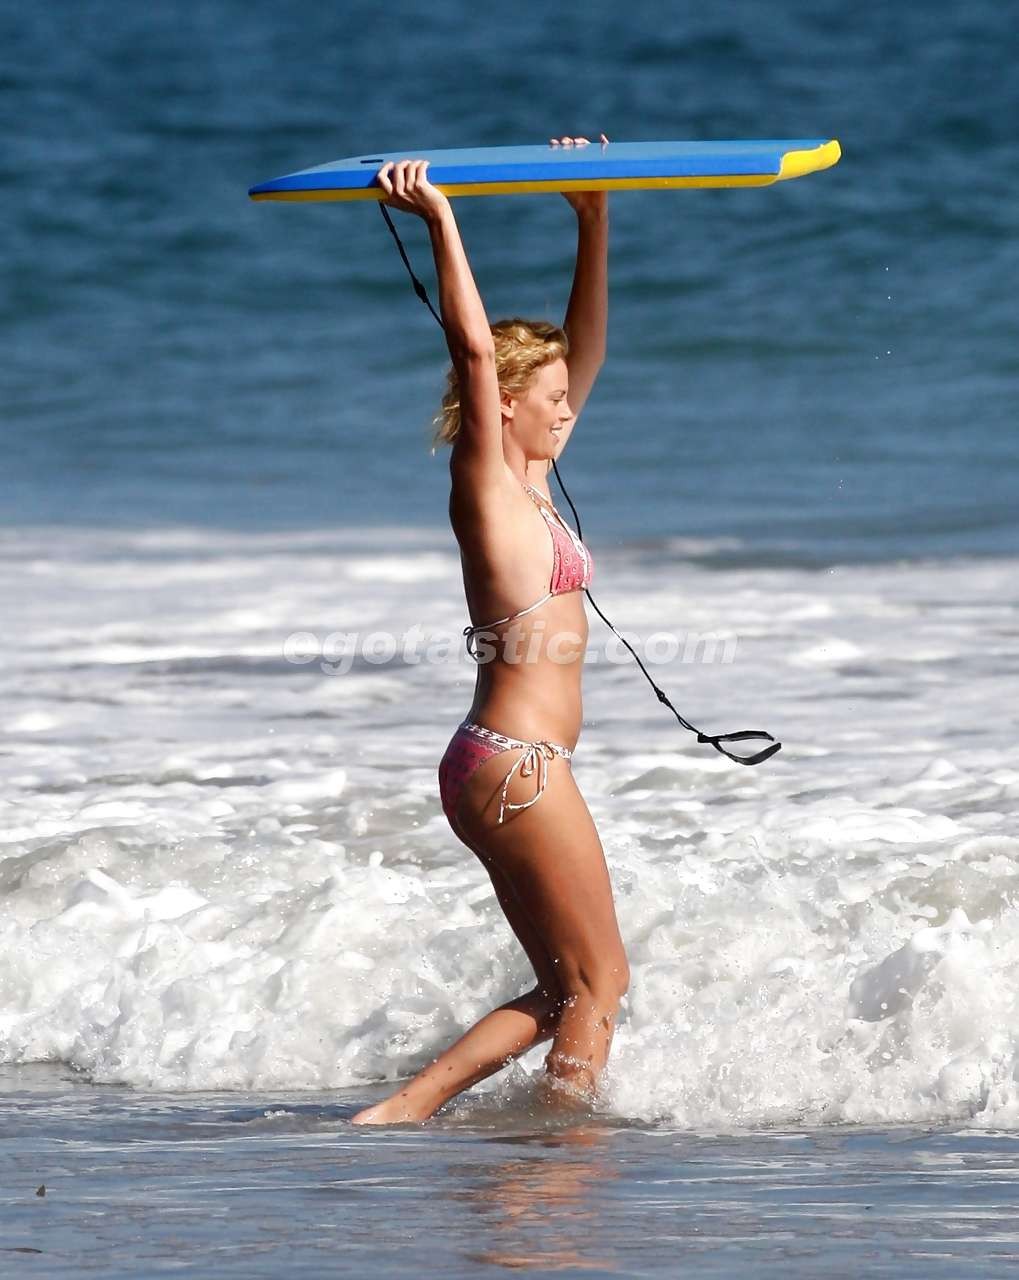 シャーリーズ・セロンがビーチでビキニを着て遊ぶ姿がパパラッチされる
 #75297135